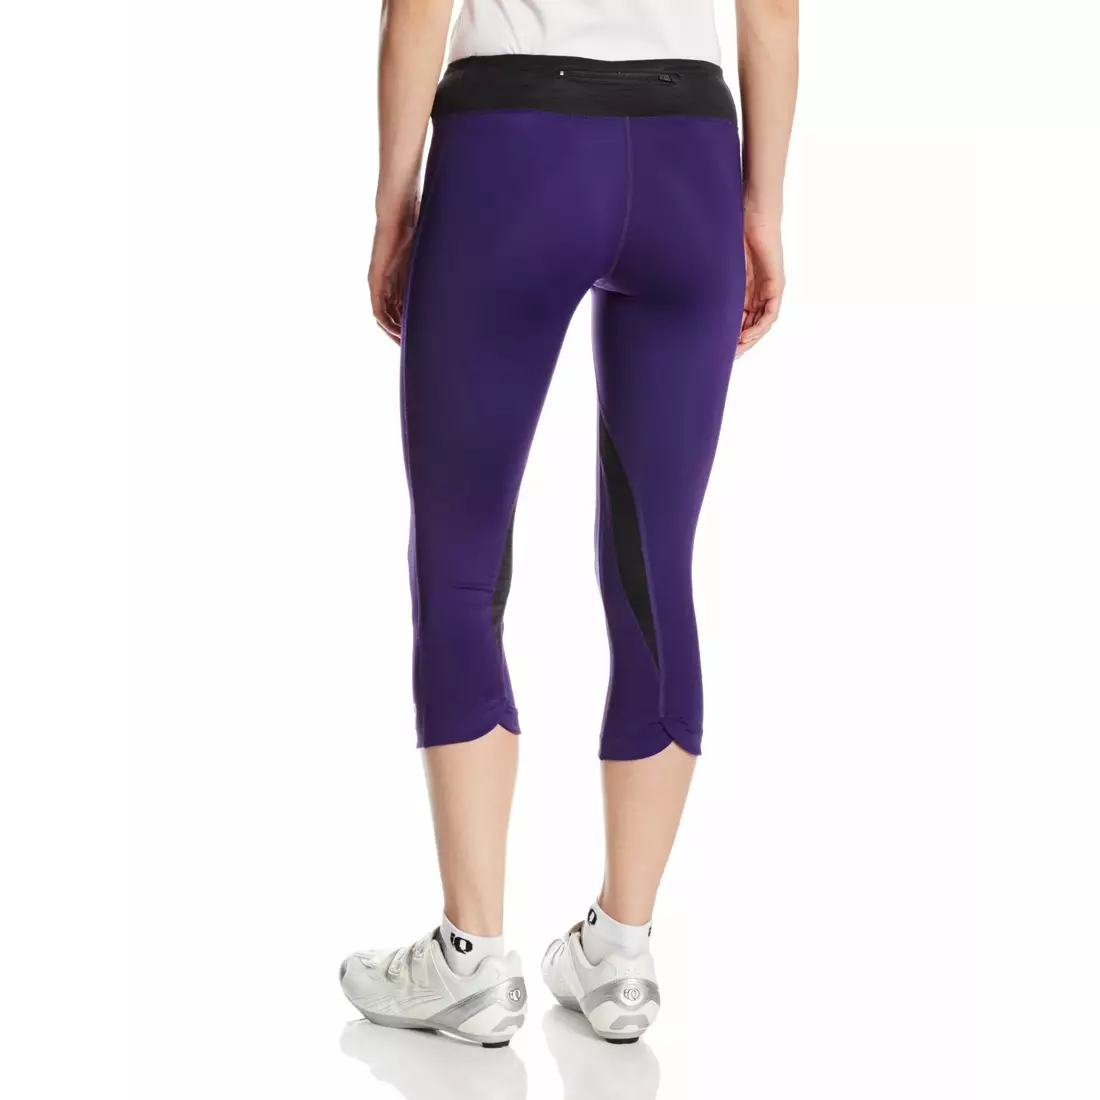 PEARL IZUMI - W's Fly 3/4 Tight 12211406-4GE - pantaloni scurți pentru alergare 3/4 pentru femei, culoare: Violet